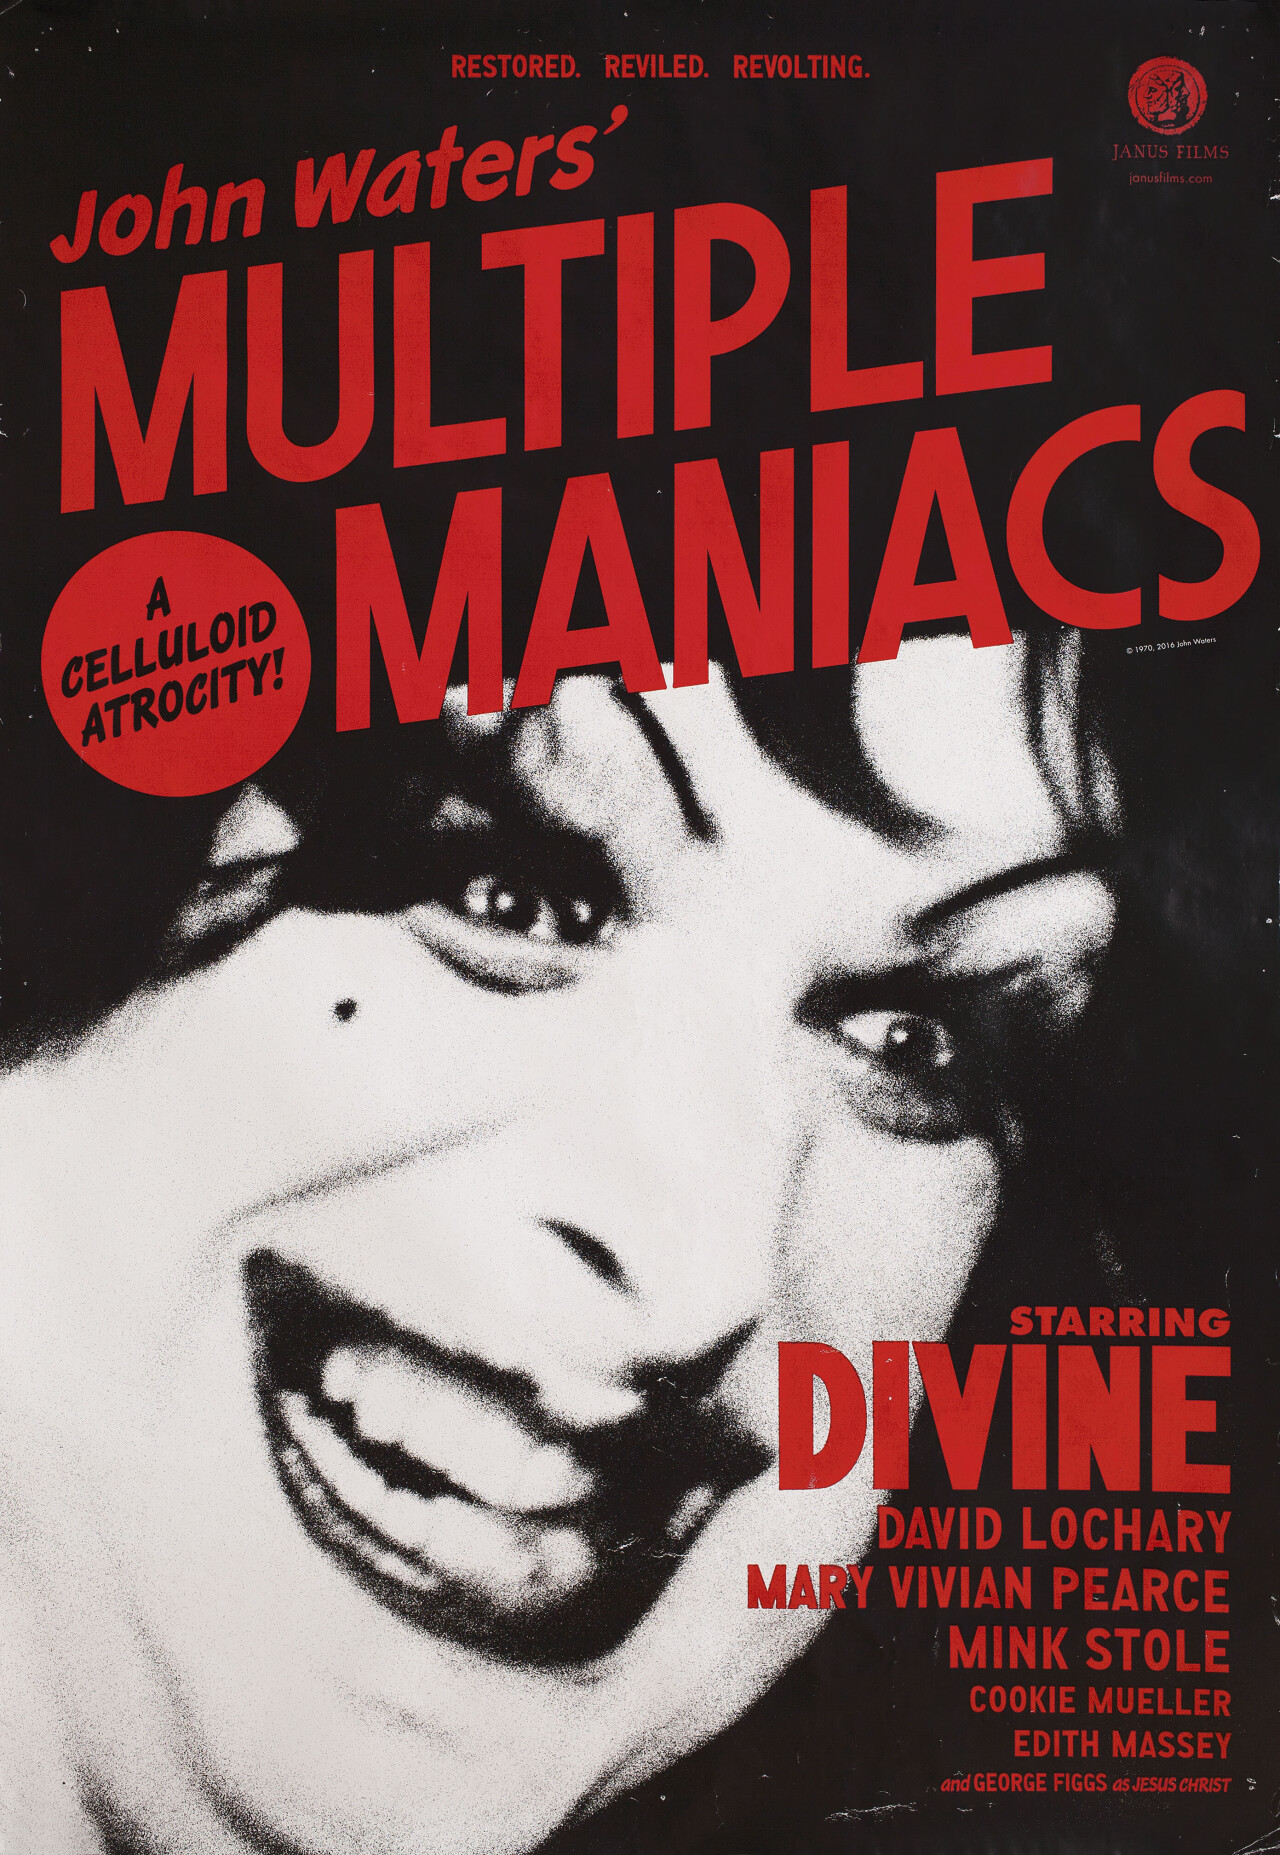 Множественные маньяки (Multiple Maniacs, 1970), режиссёр Джон Уотерс, американский постер к фильму (ужасы, 2016 год)